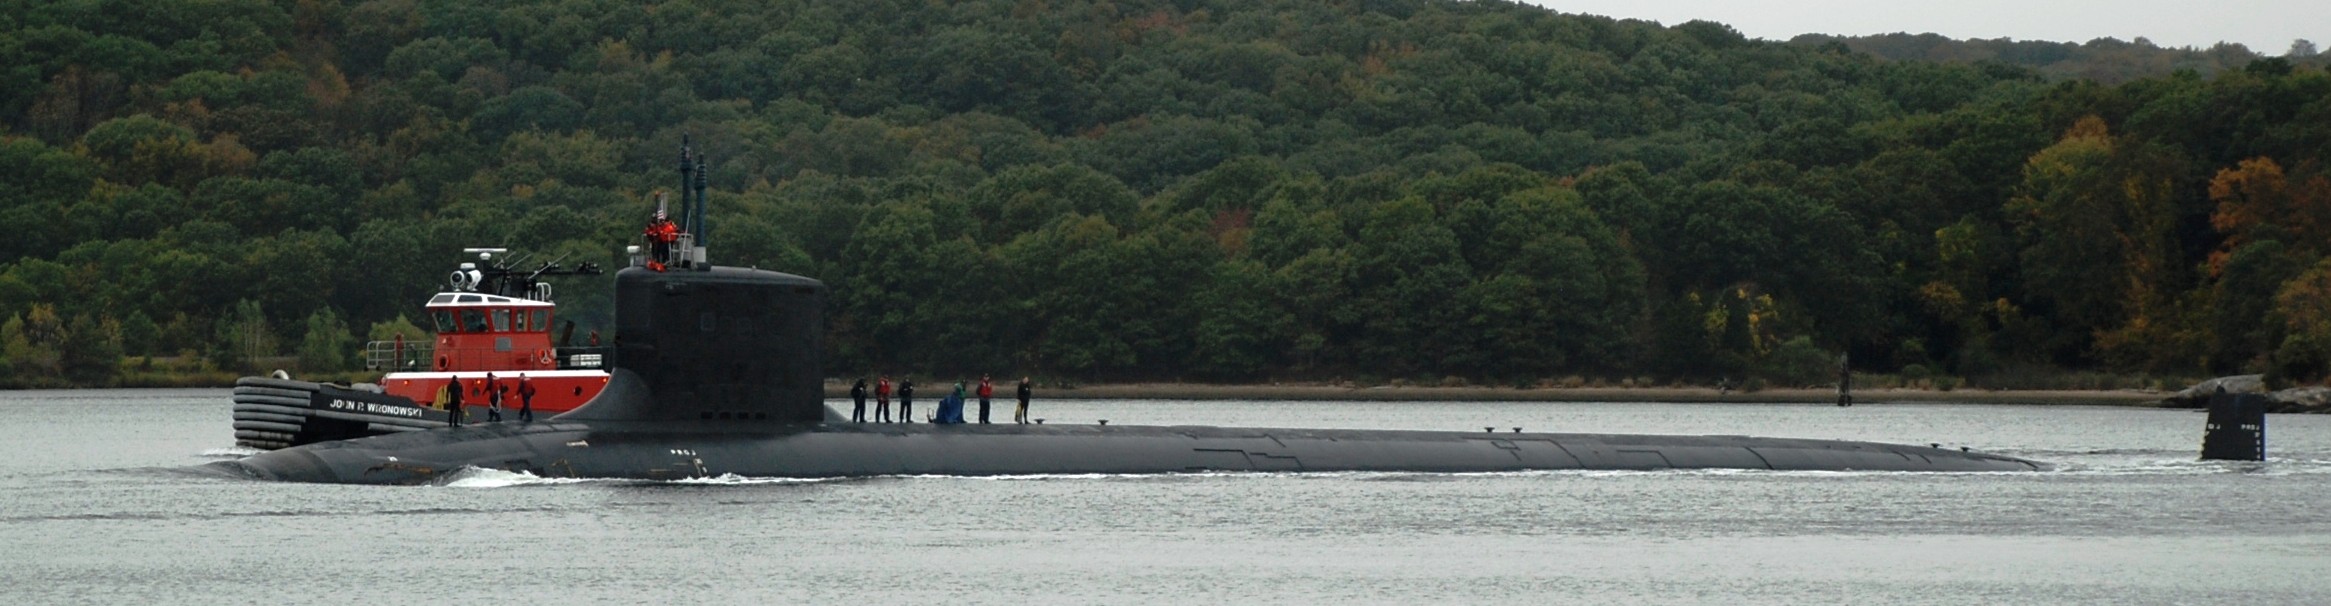 ssn-774 uss virginia attack submarine navy 2009 21